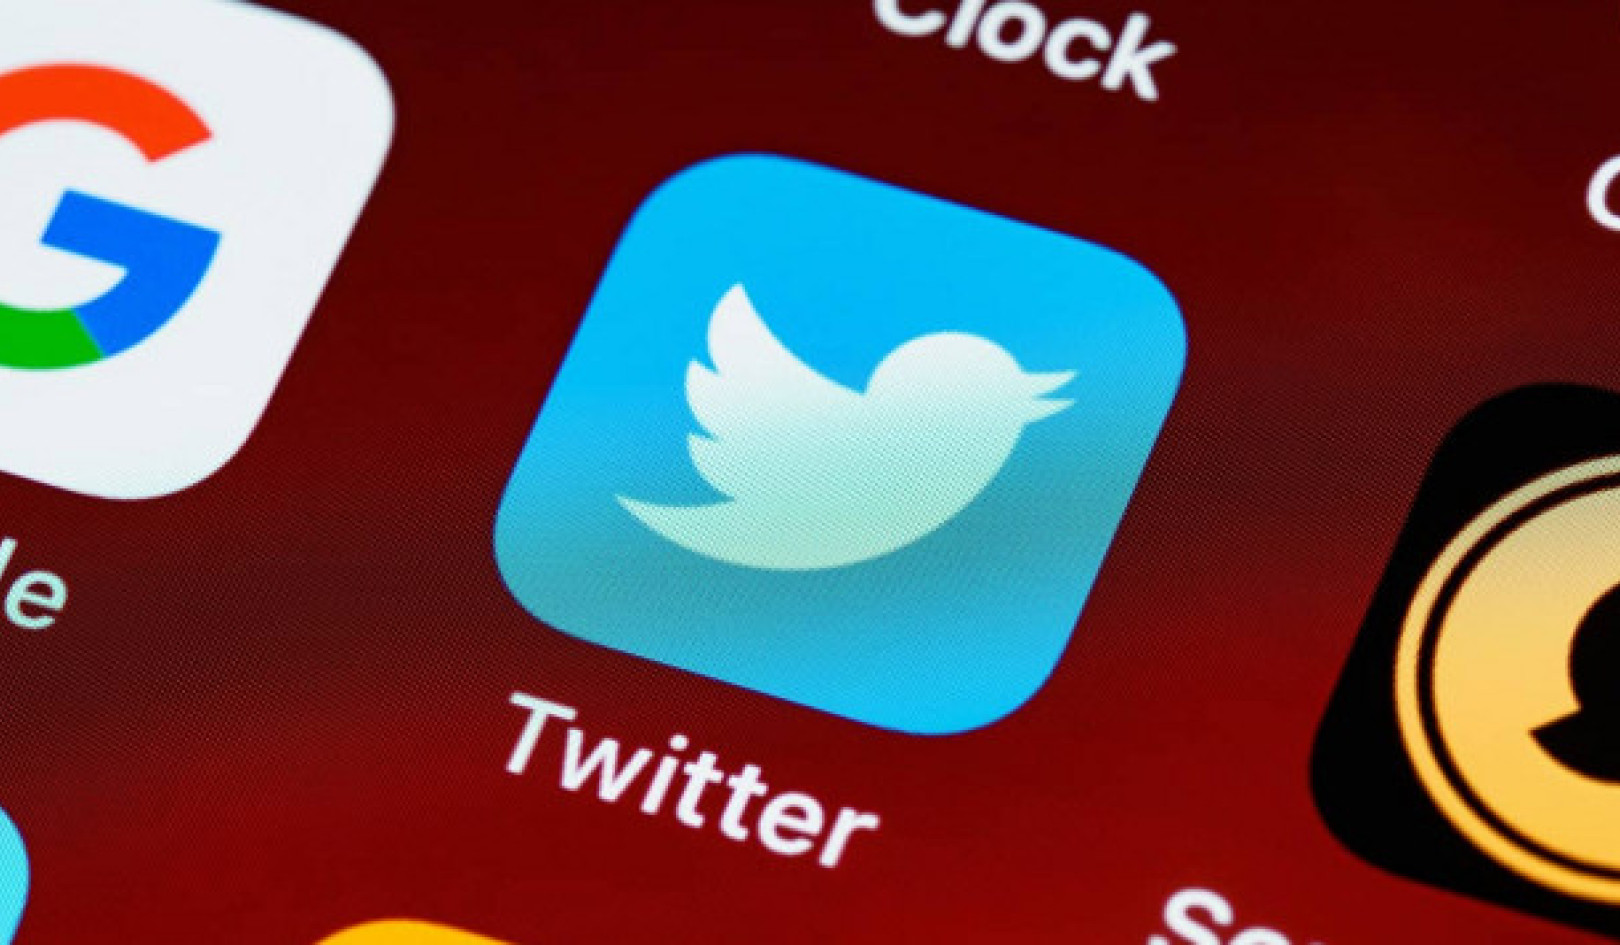 Leader politici su Twitter: tendenze contrastanti nei contenuti non affidabili